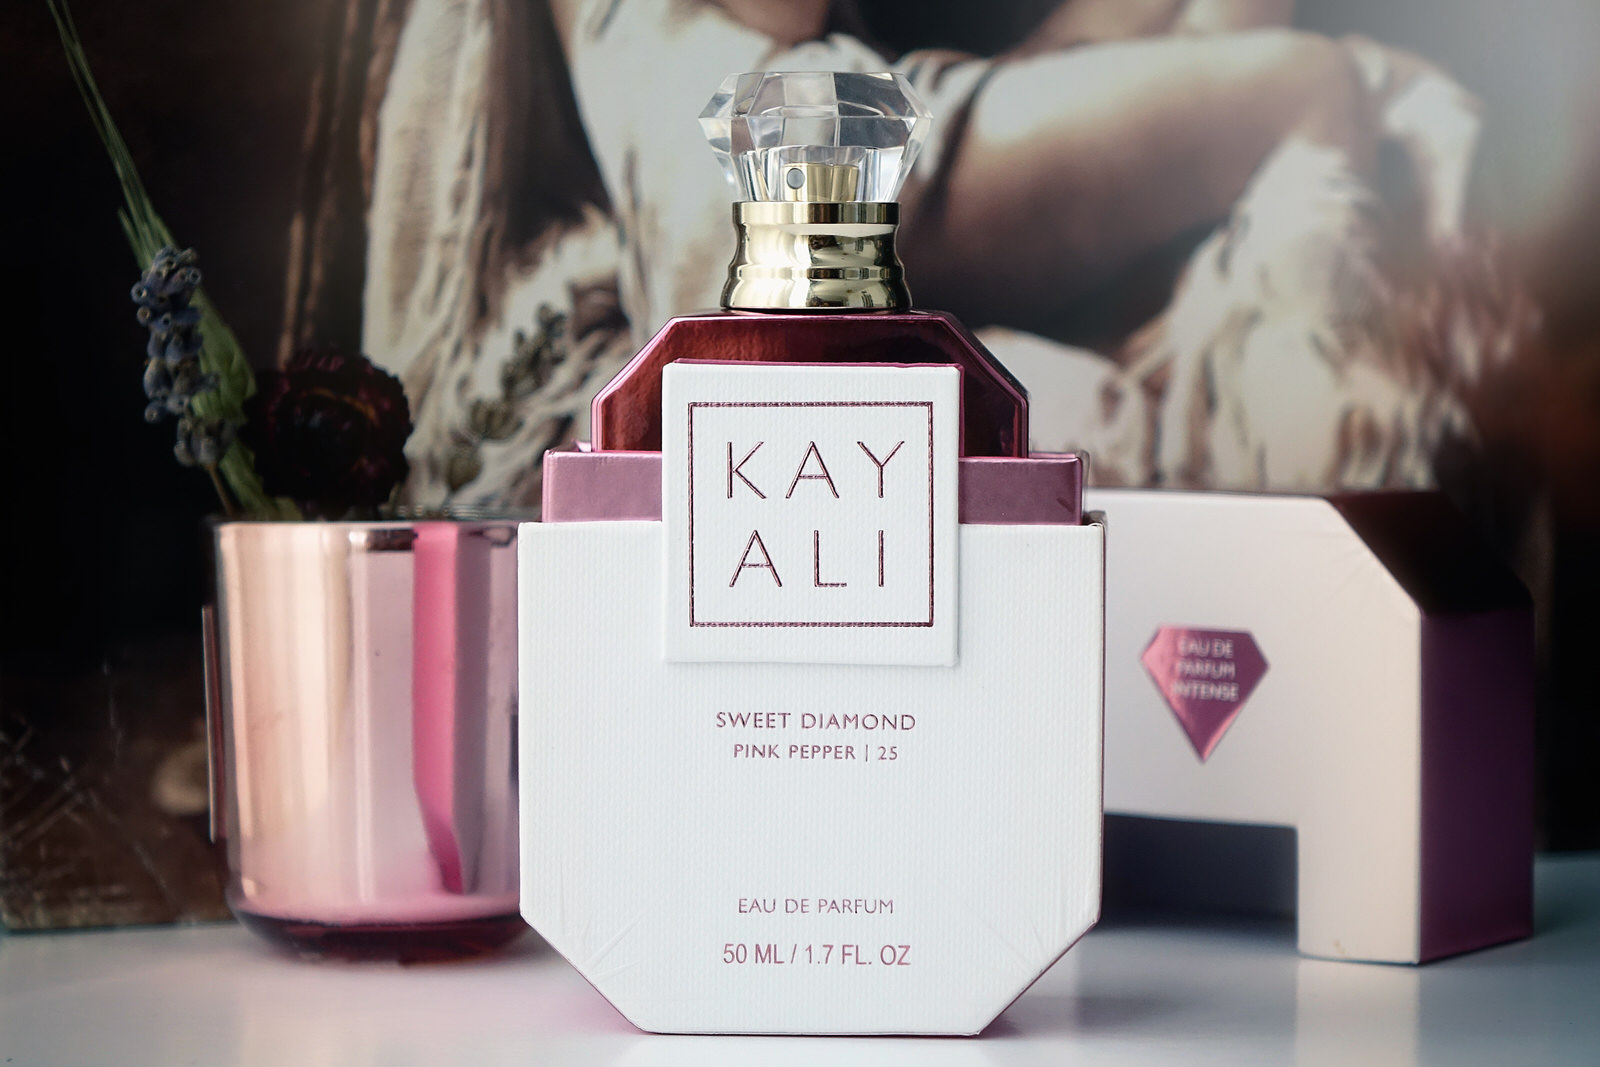 Le nouveau parfum de Kayali, Sweet Diamond